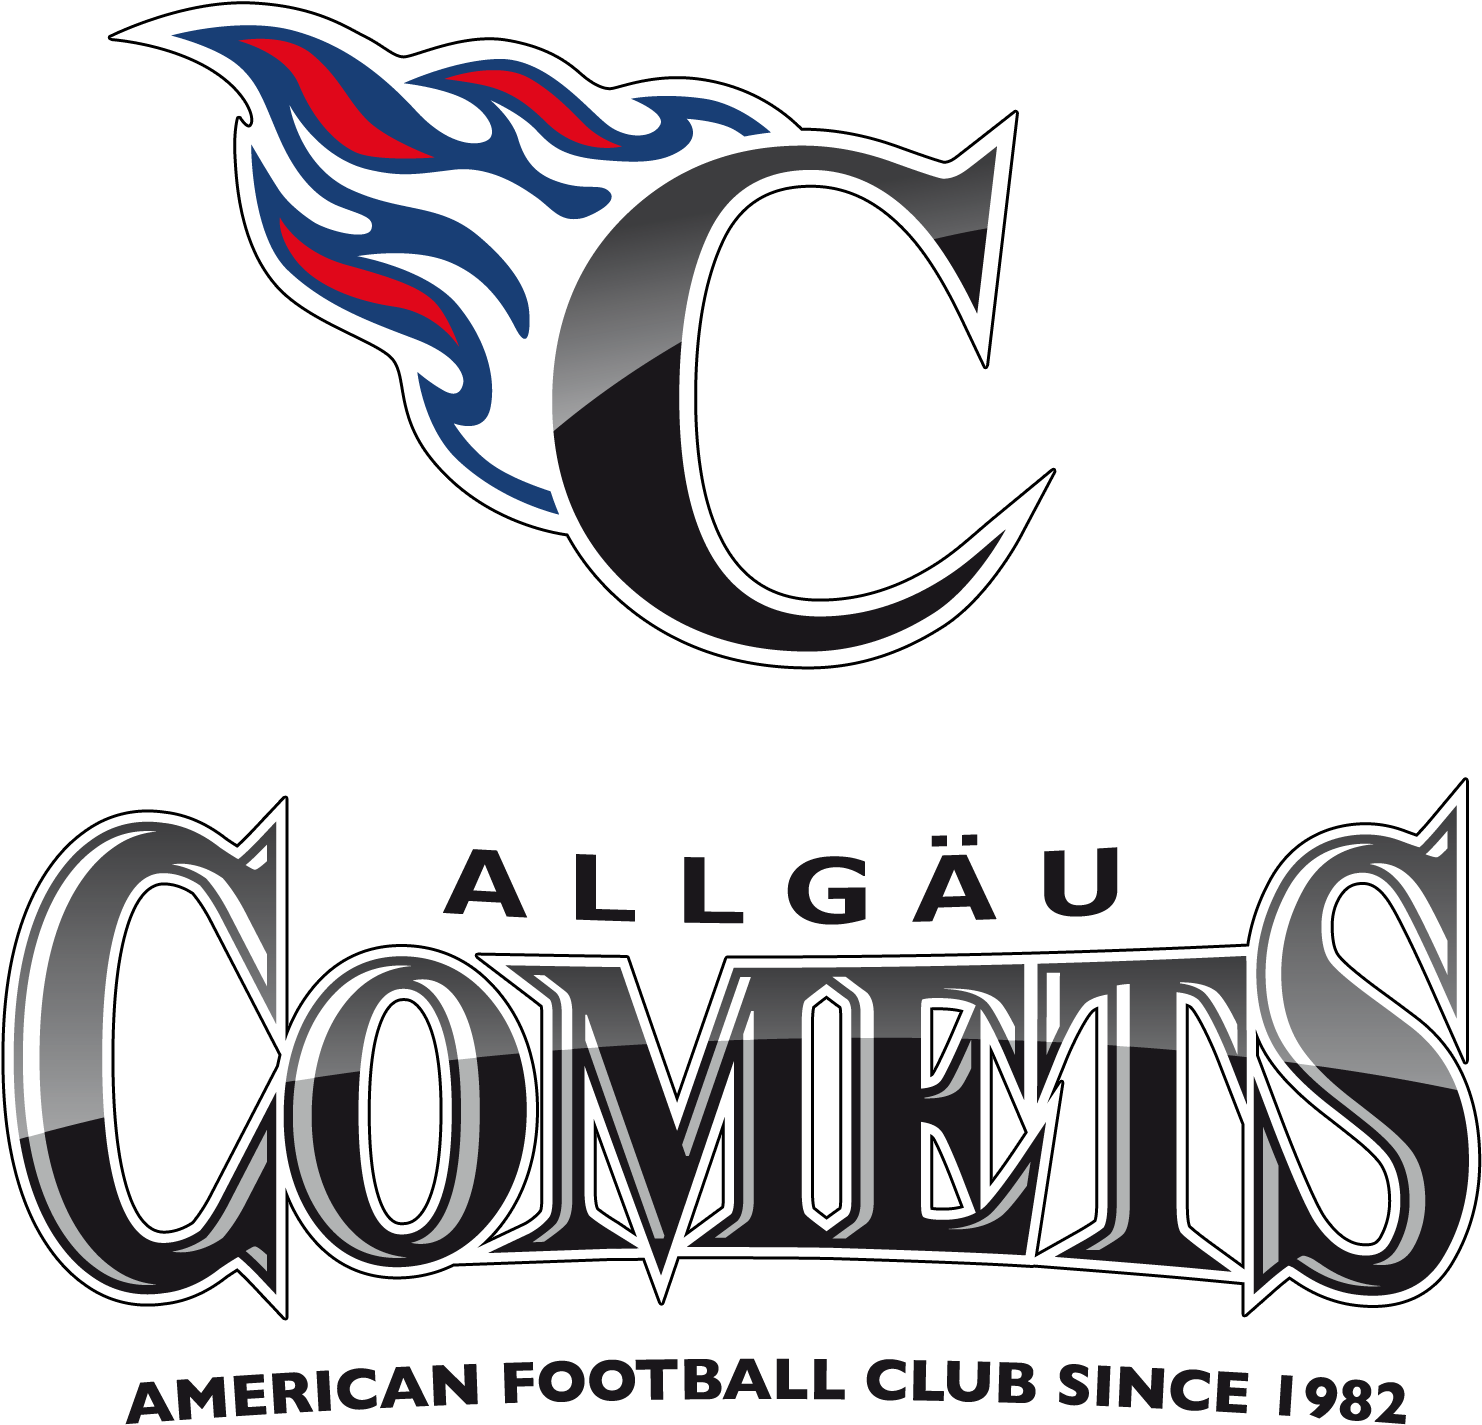 Allgaeu Comets American Football Club Logo PNG